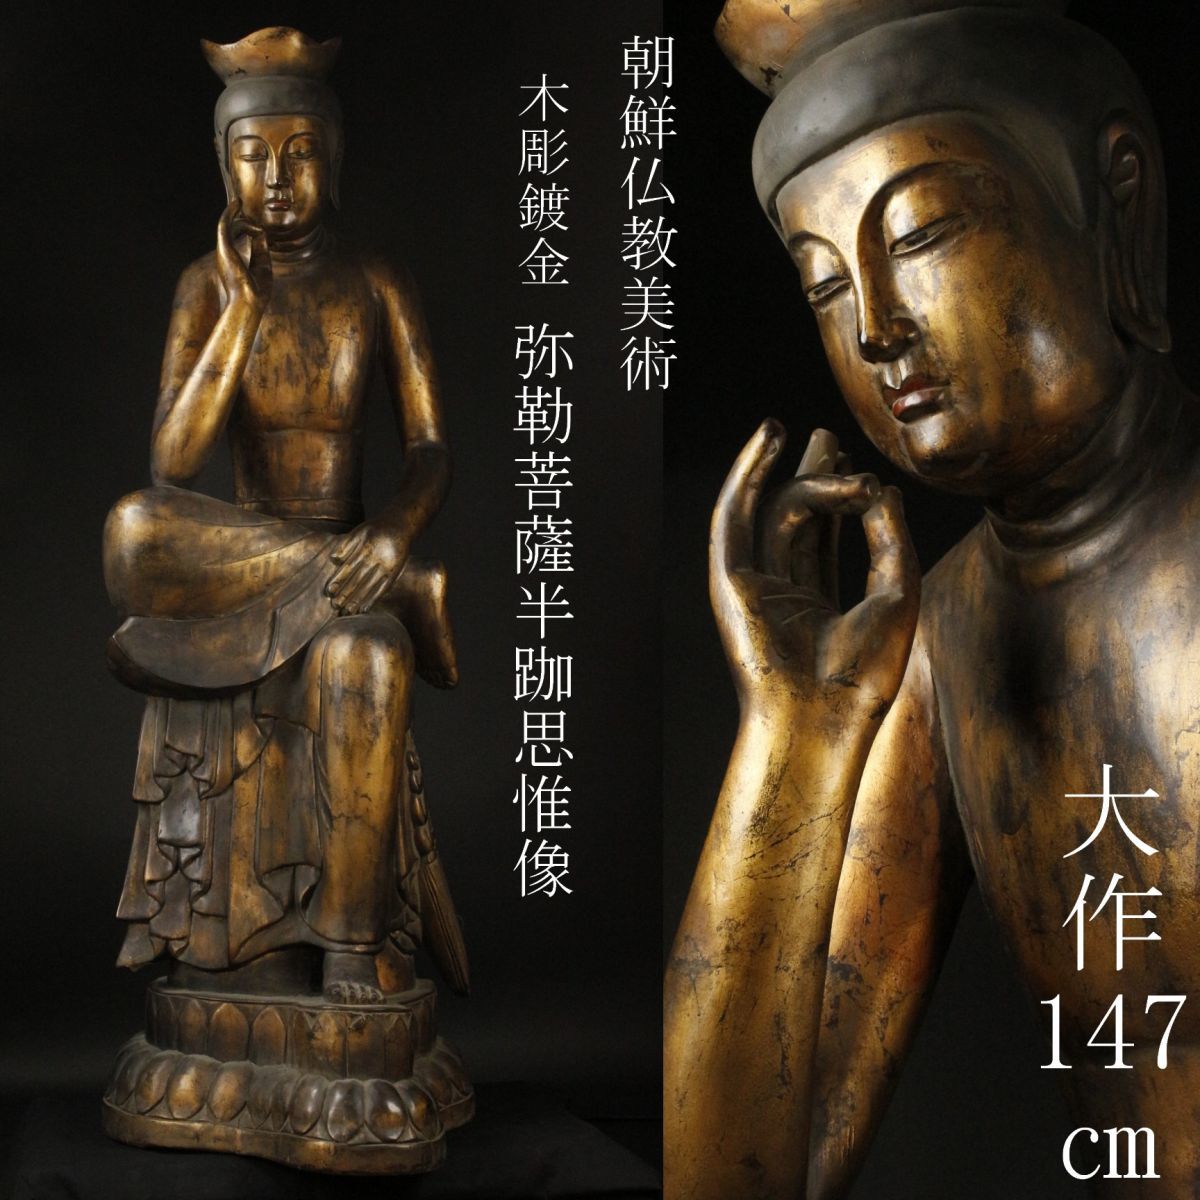 公式通販- 仏教美術 木彫 在銘 仏像 箱•付 W - lab.comfamiliar.com